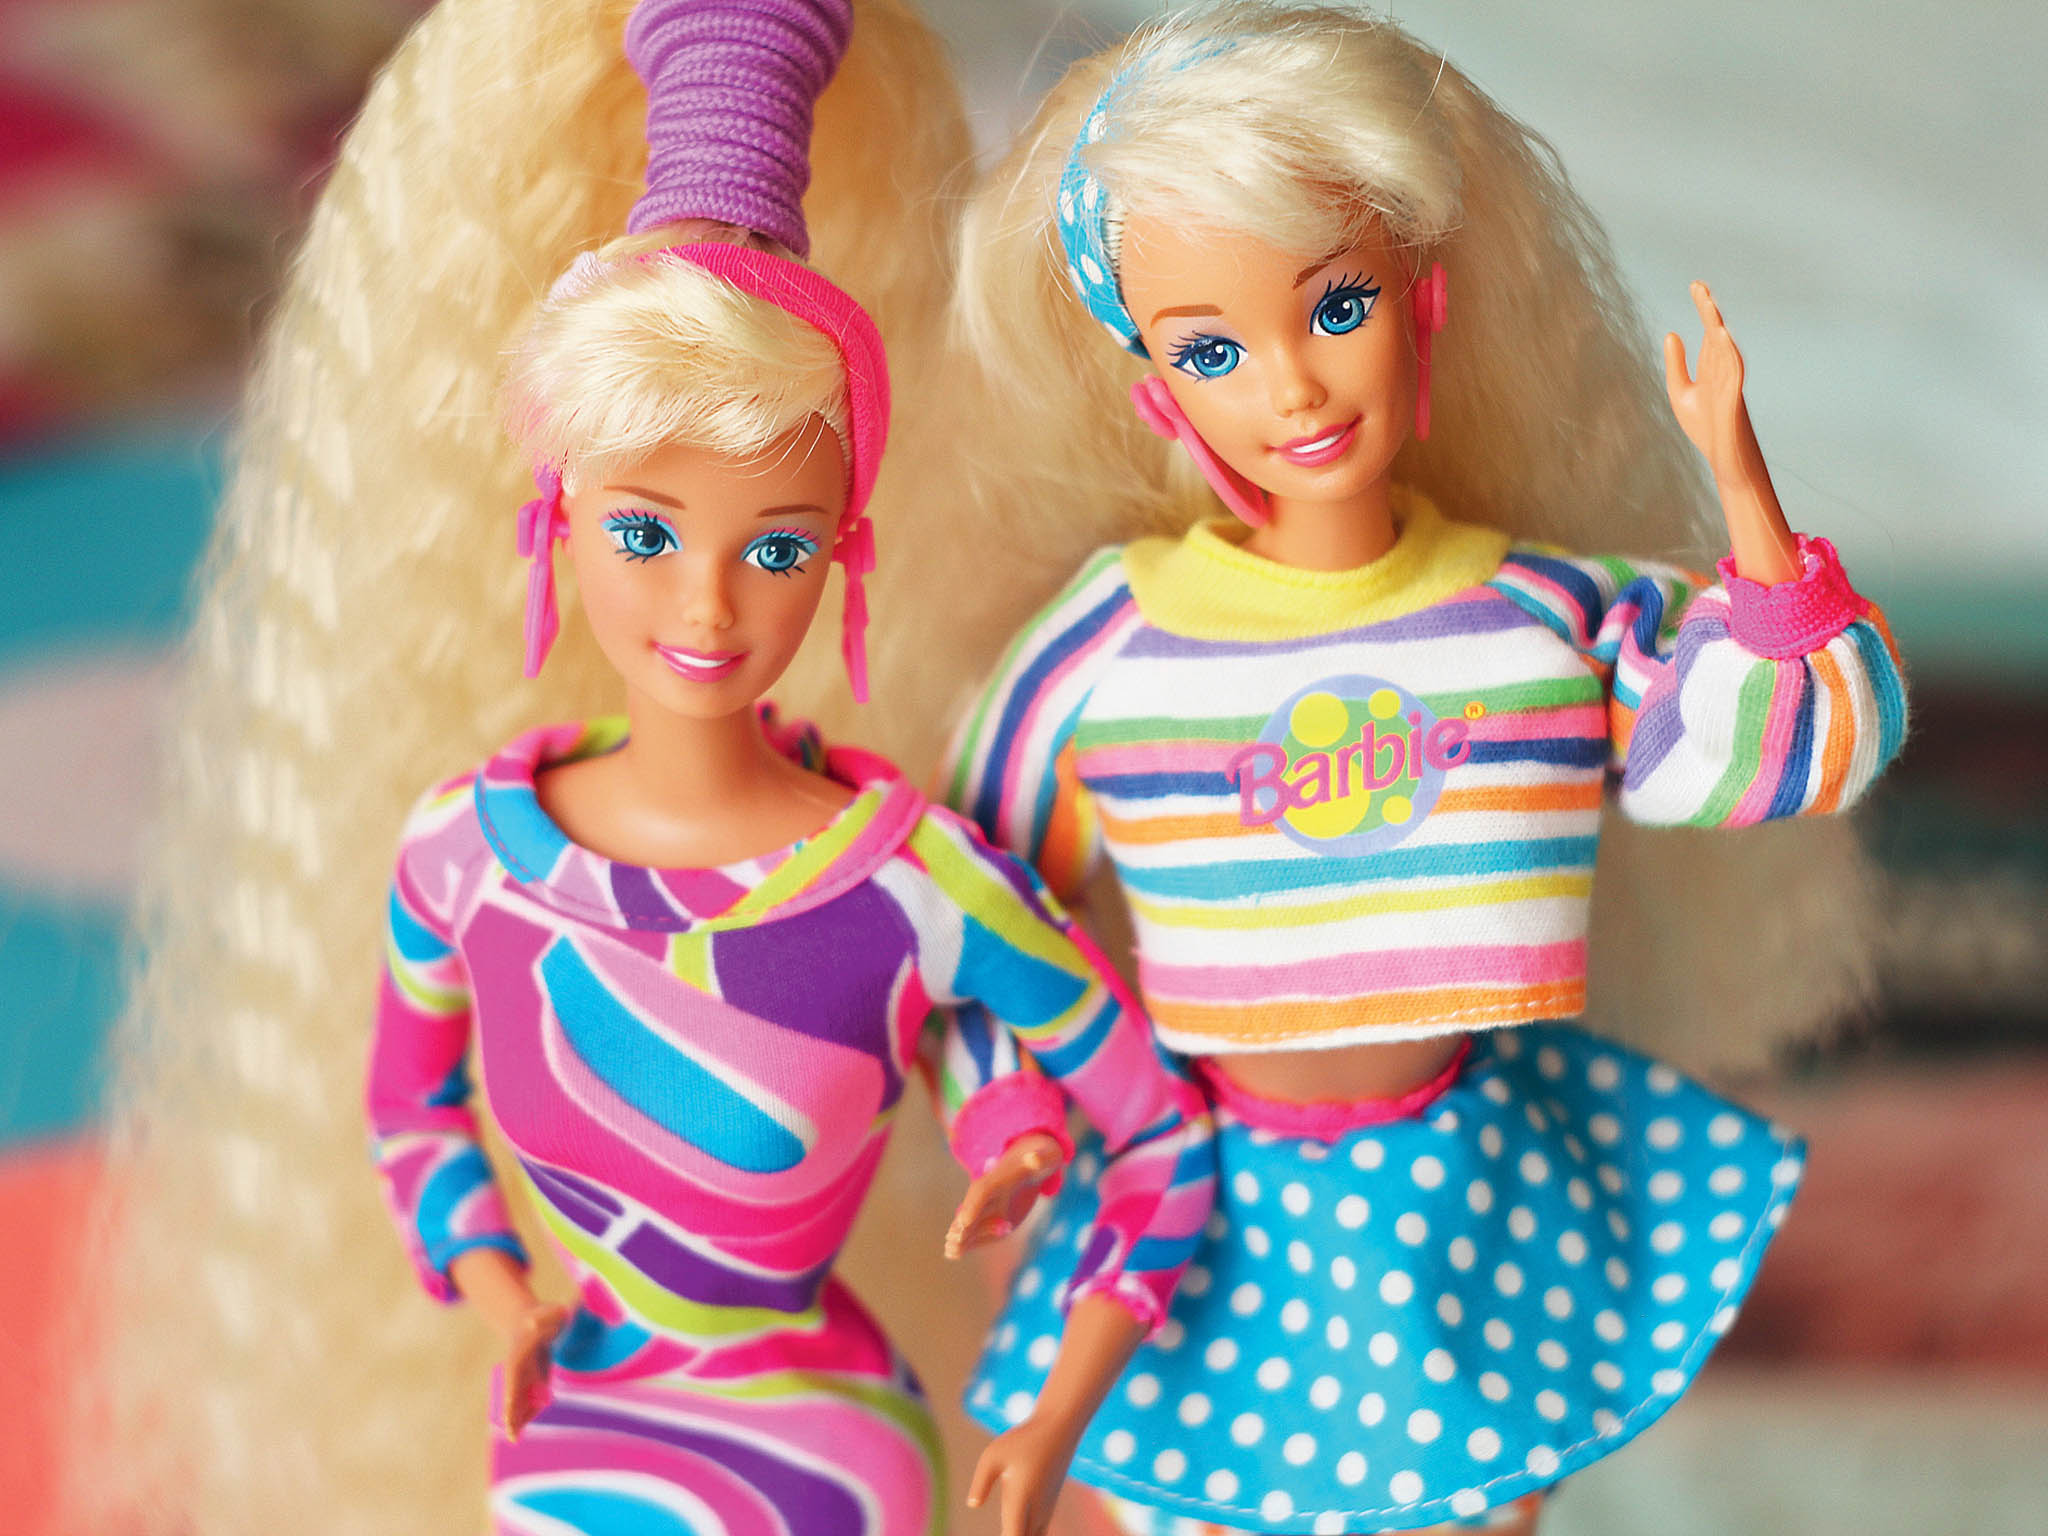 Výrobci panenek Barbie pandemie prospívá.